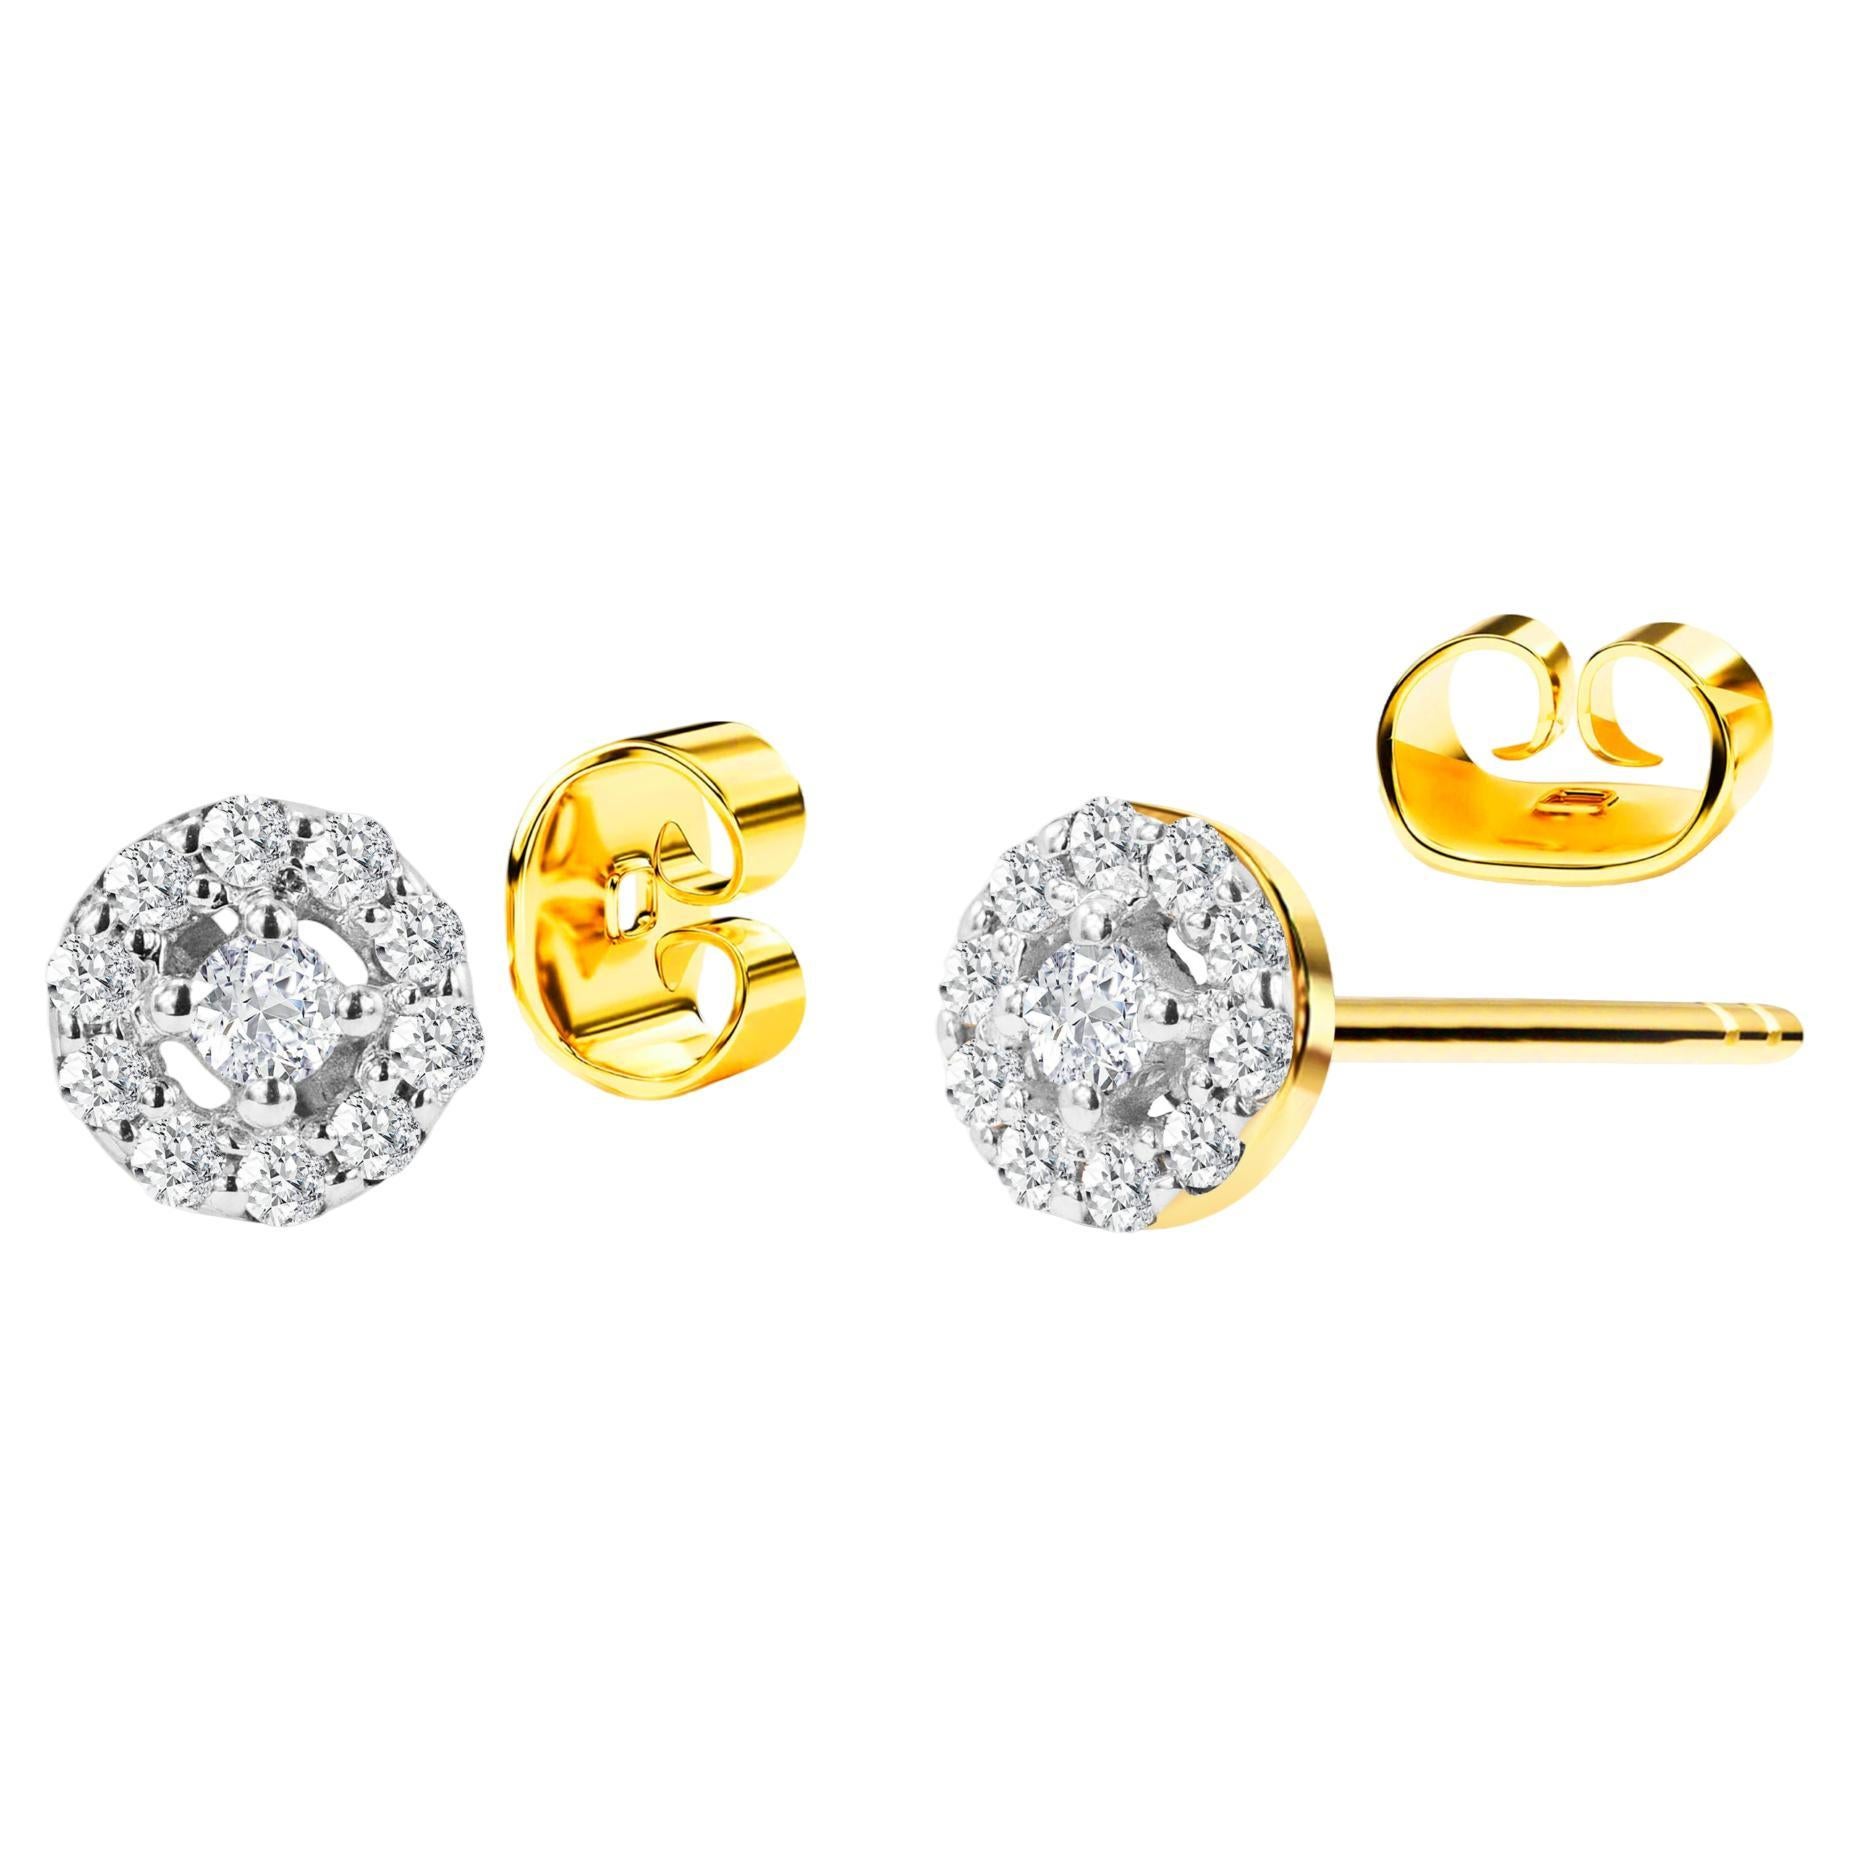 18k Gold Diamond Studs Halo Diamond Earrings Wedding Earrings For Sale